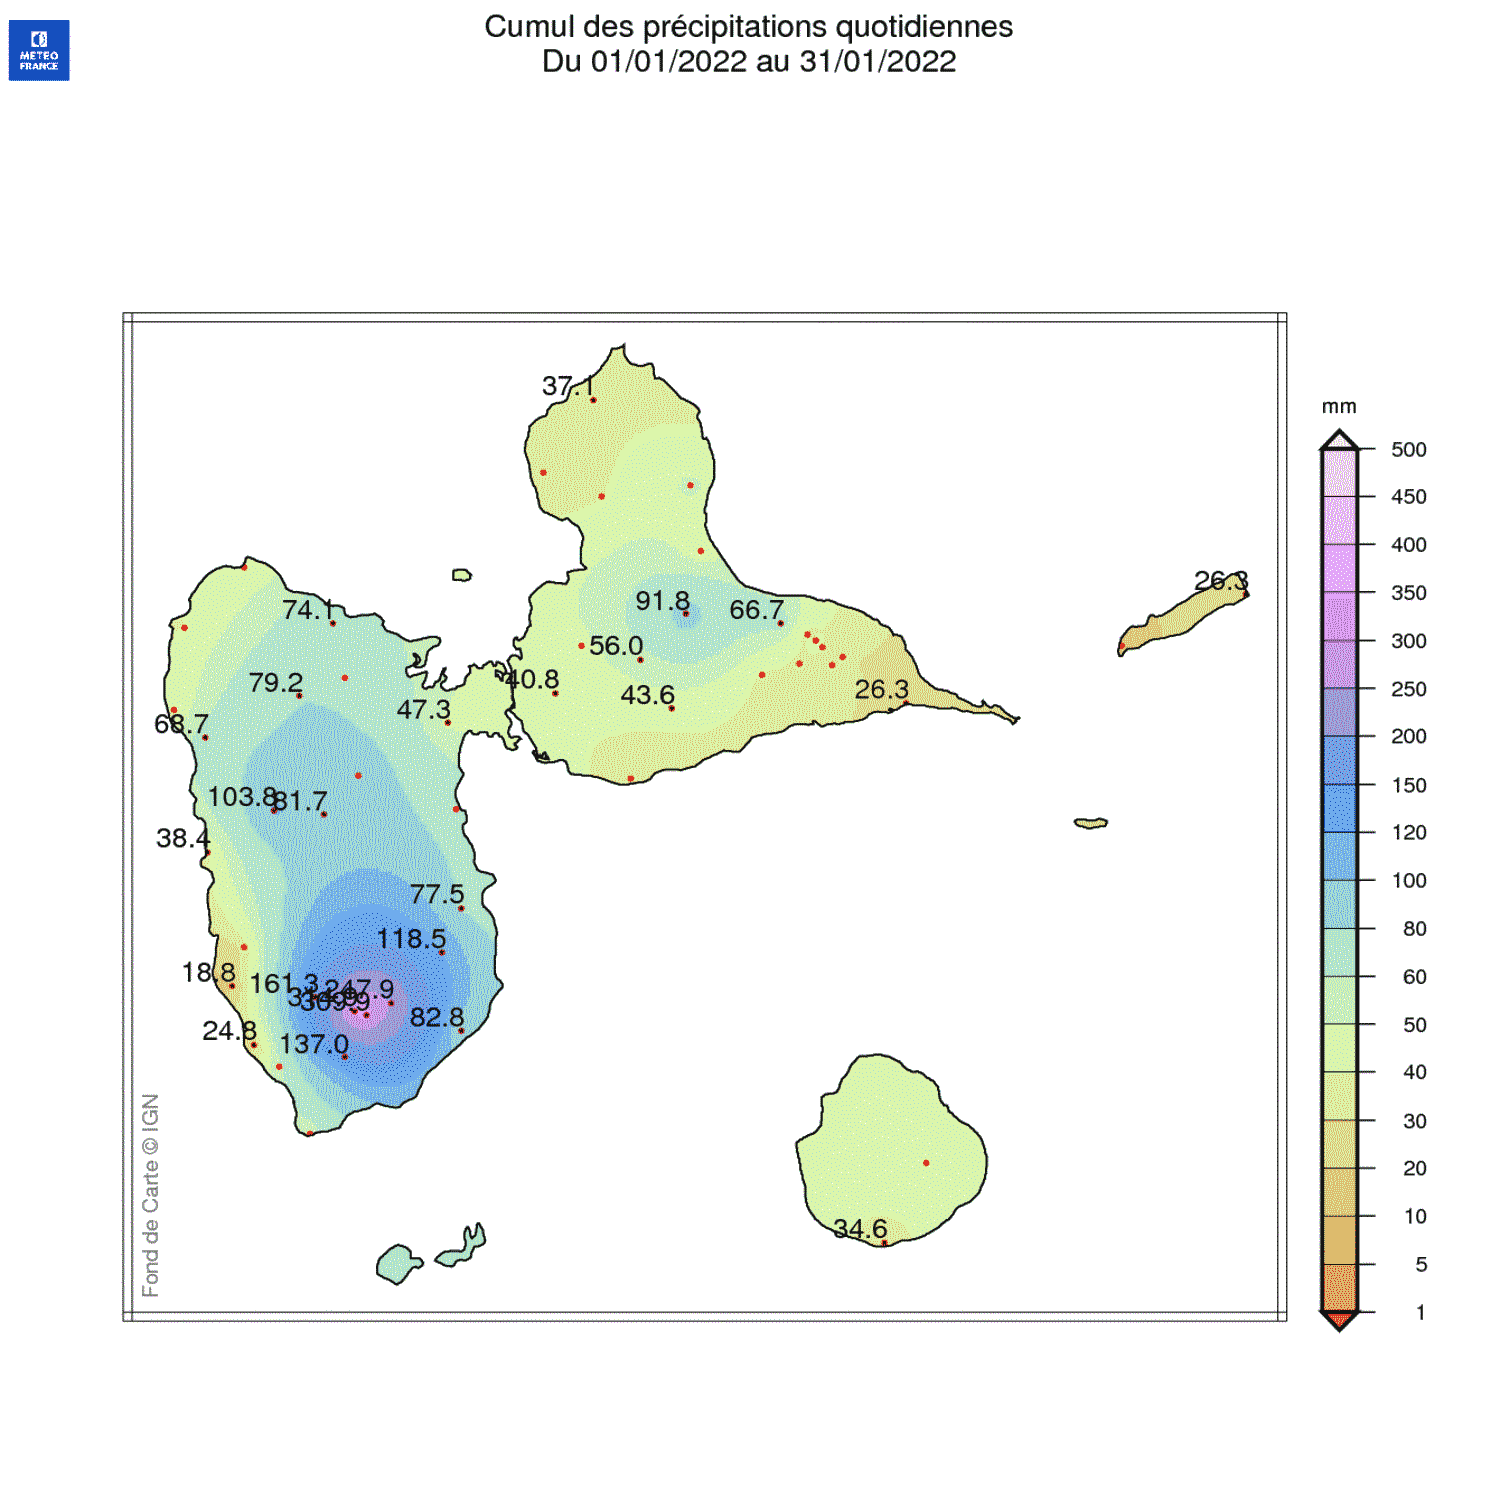 Cumul des pluies en janvier 2022 pour la Guadeloupe